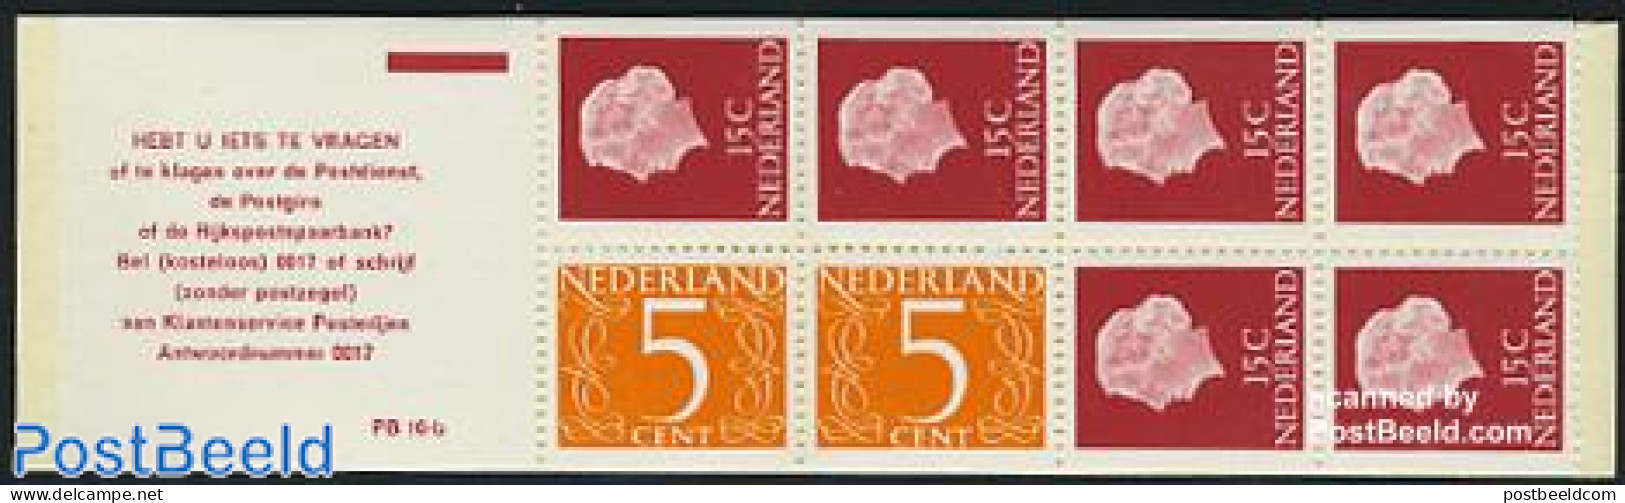 Netherlands 1971 2x5,6x15c Booklet, Phosphor, Text: HEBT U IETS TE, Mint NH, Stamp Booklets - Ongebruikt